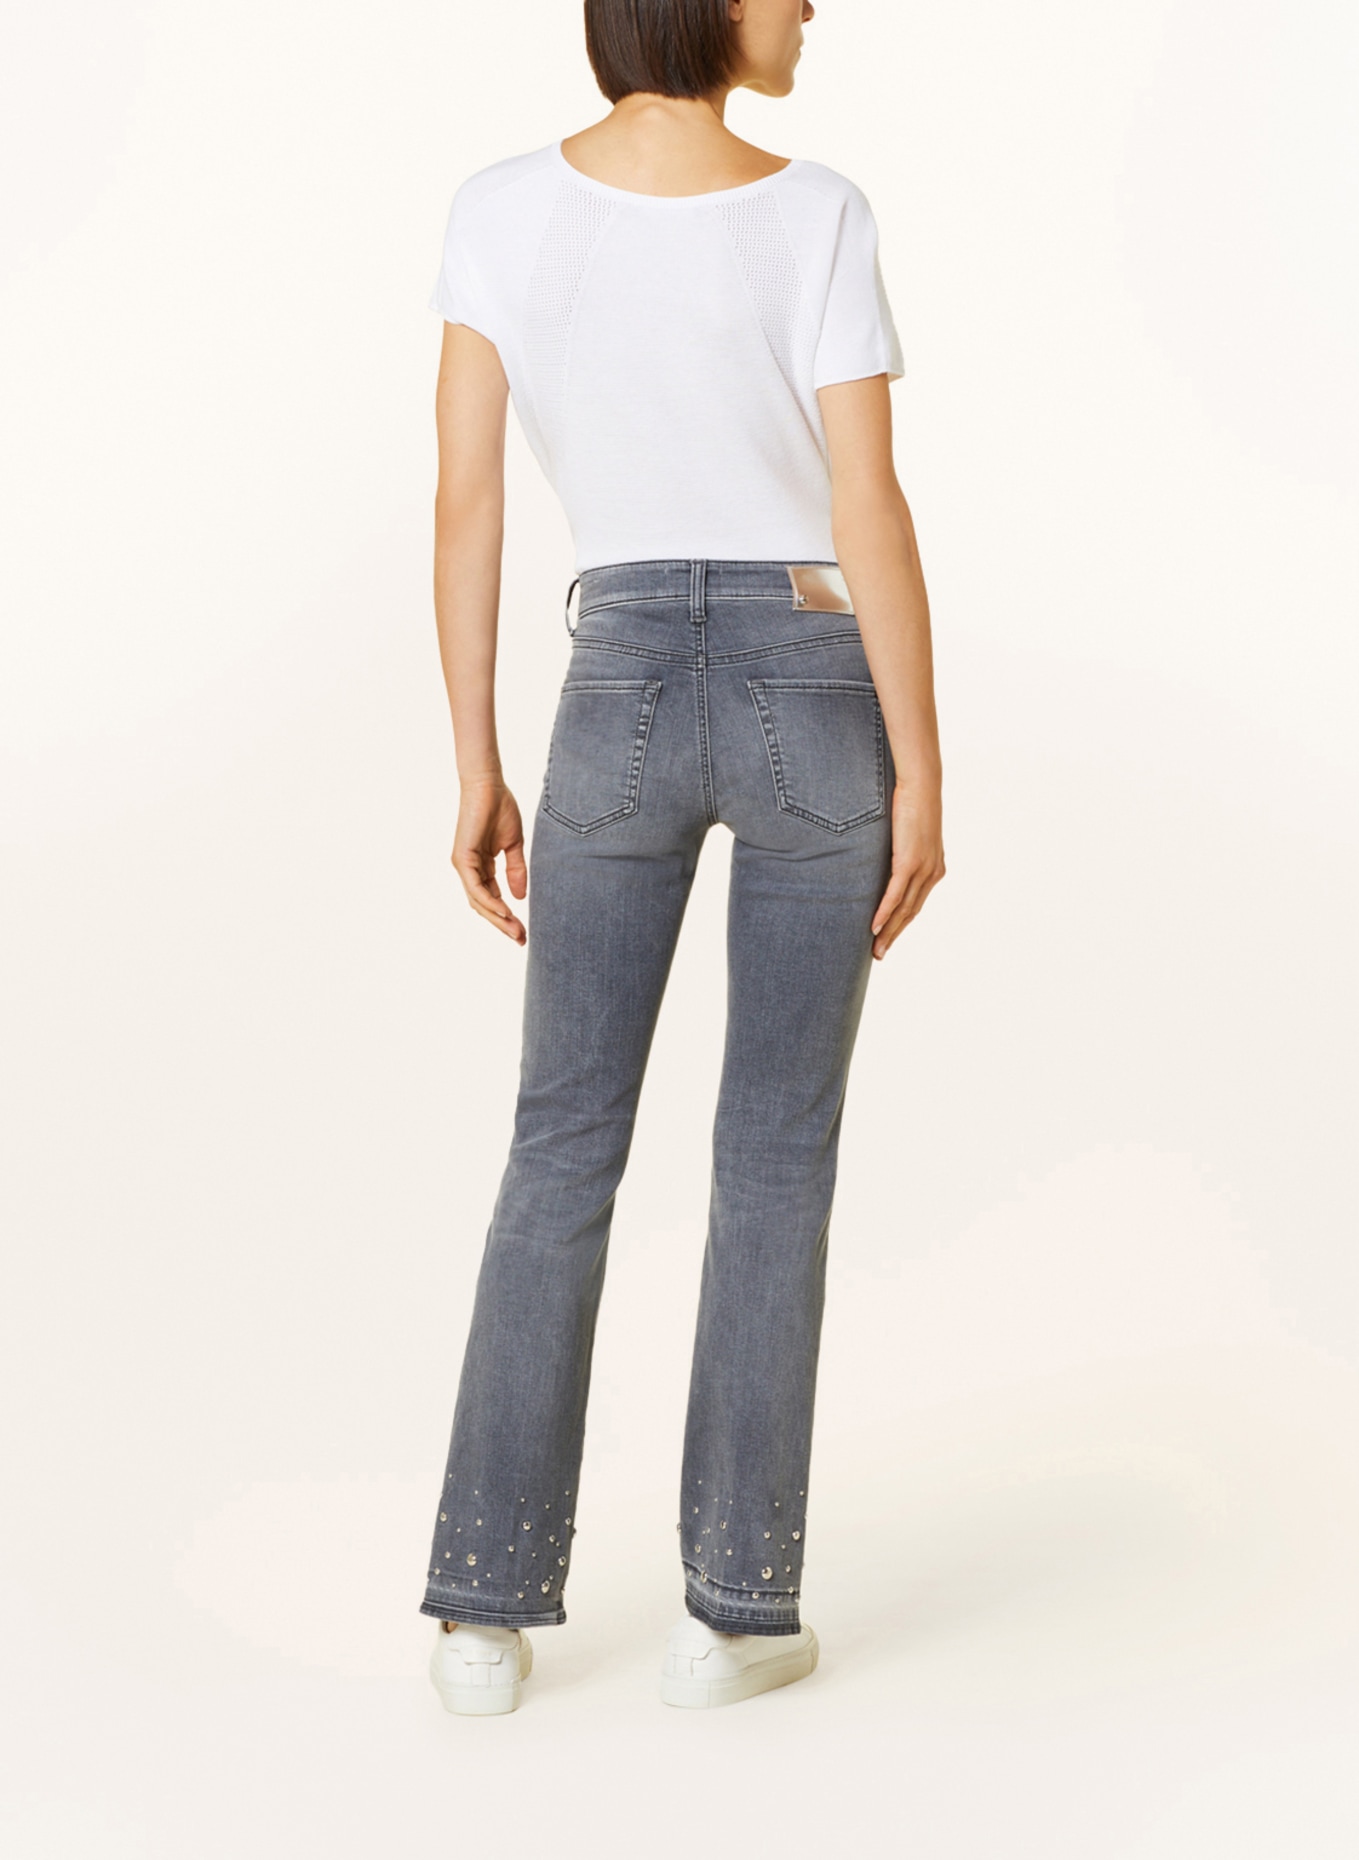 CAMBIO Flared Jeans PARIS mit Nieten, Farbe: 5241 feminin contrast used ope (Bild 3)